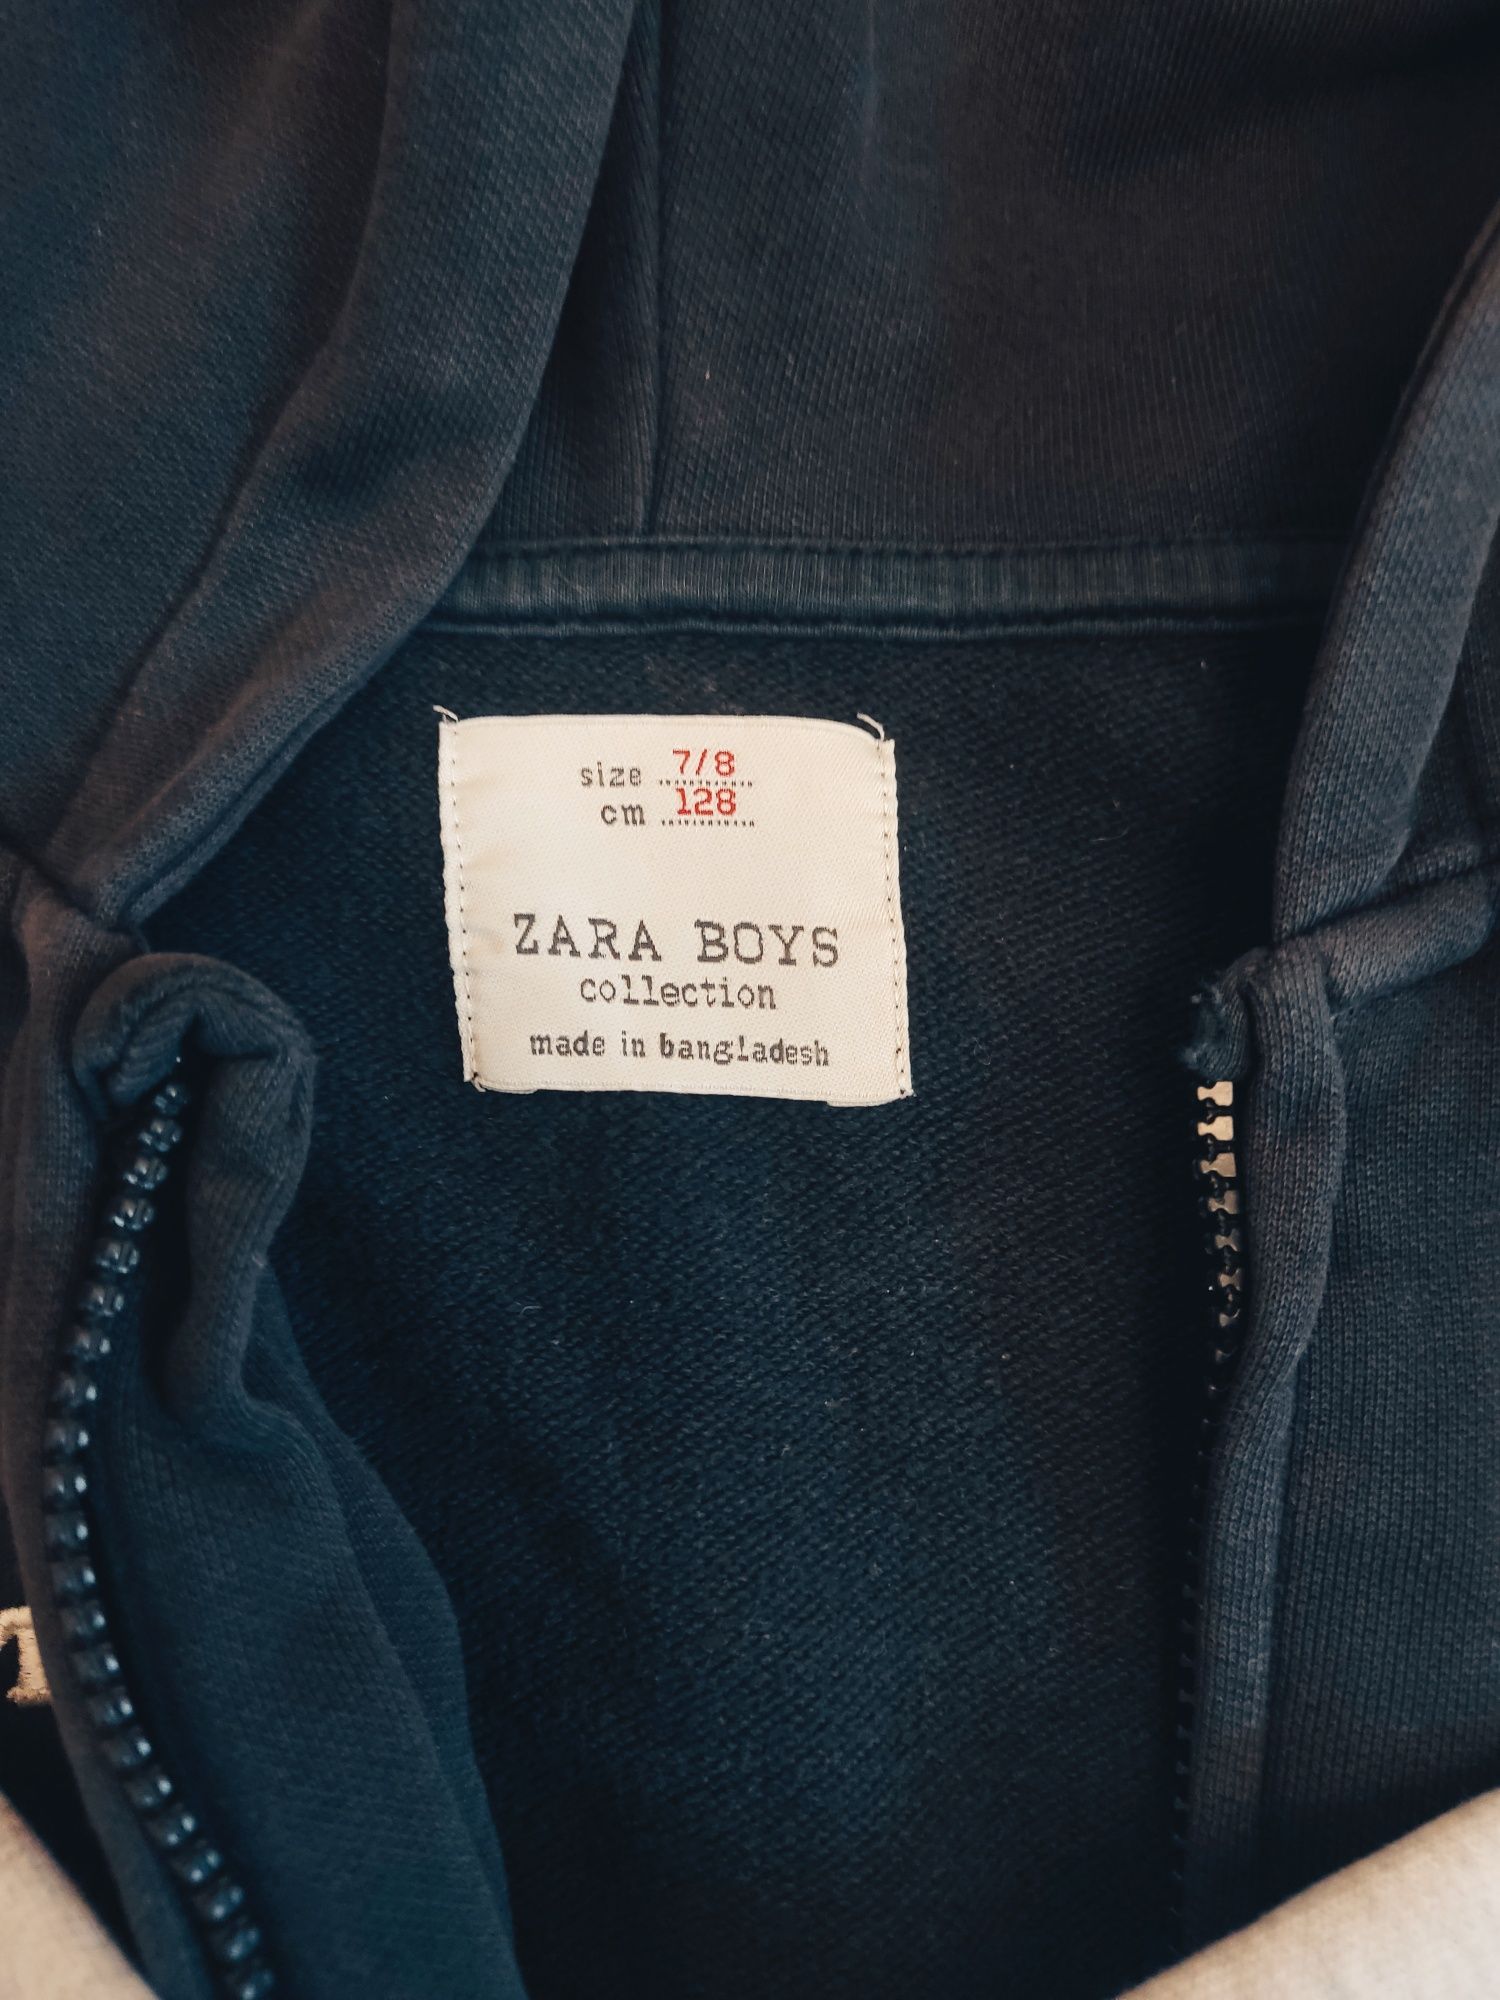 Zara Boys Collection 7/8size cm128